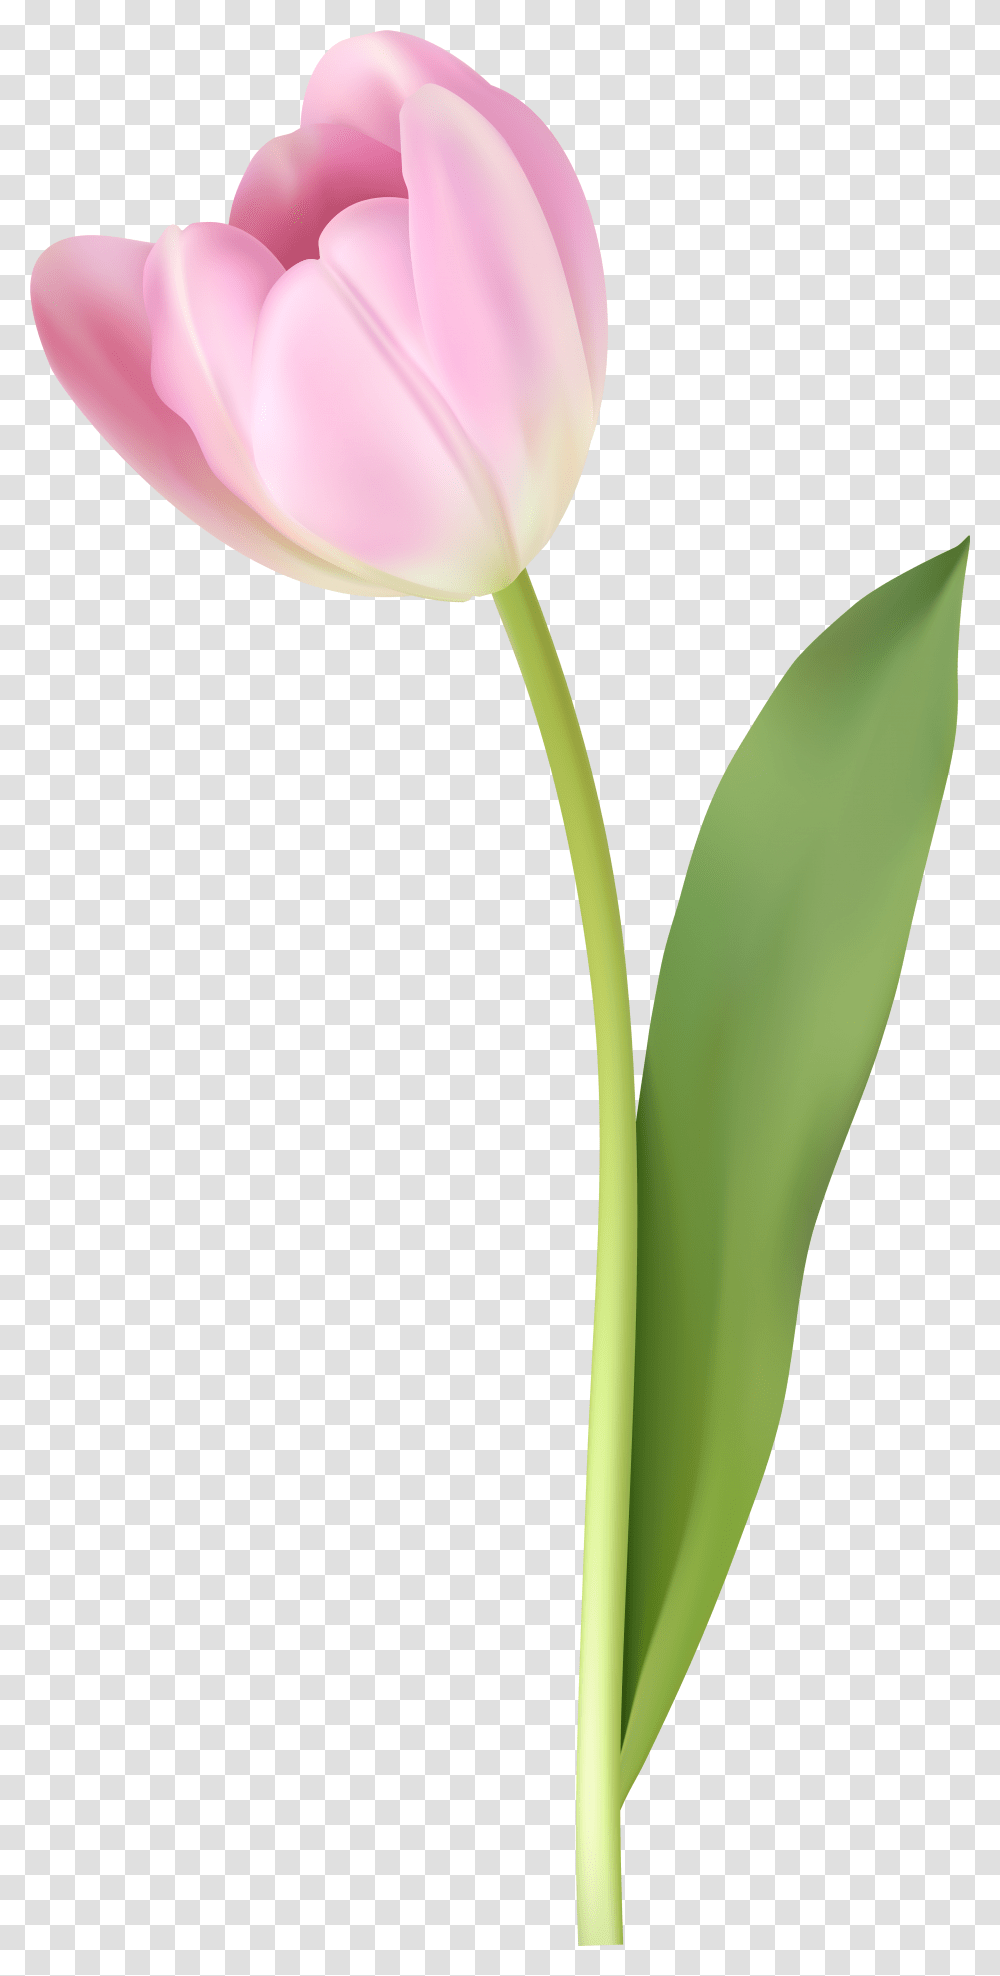 Pink Tulip Image Pink Tulip, Plant, Flower, Blossom, Petal Transparent Png